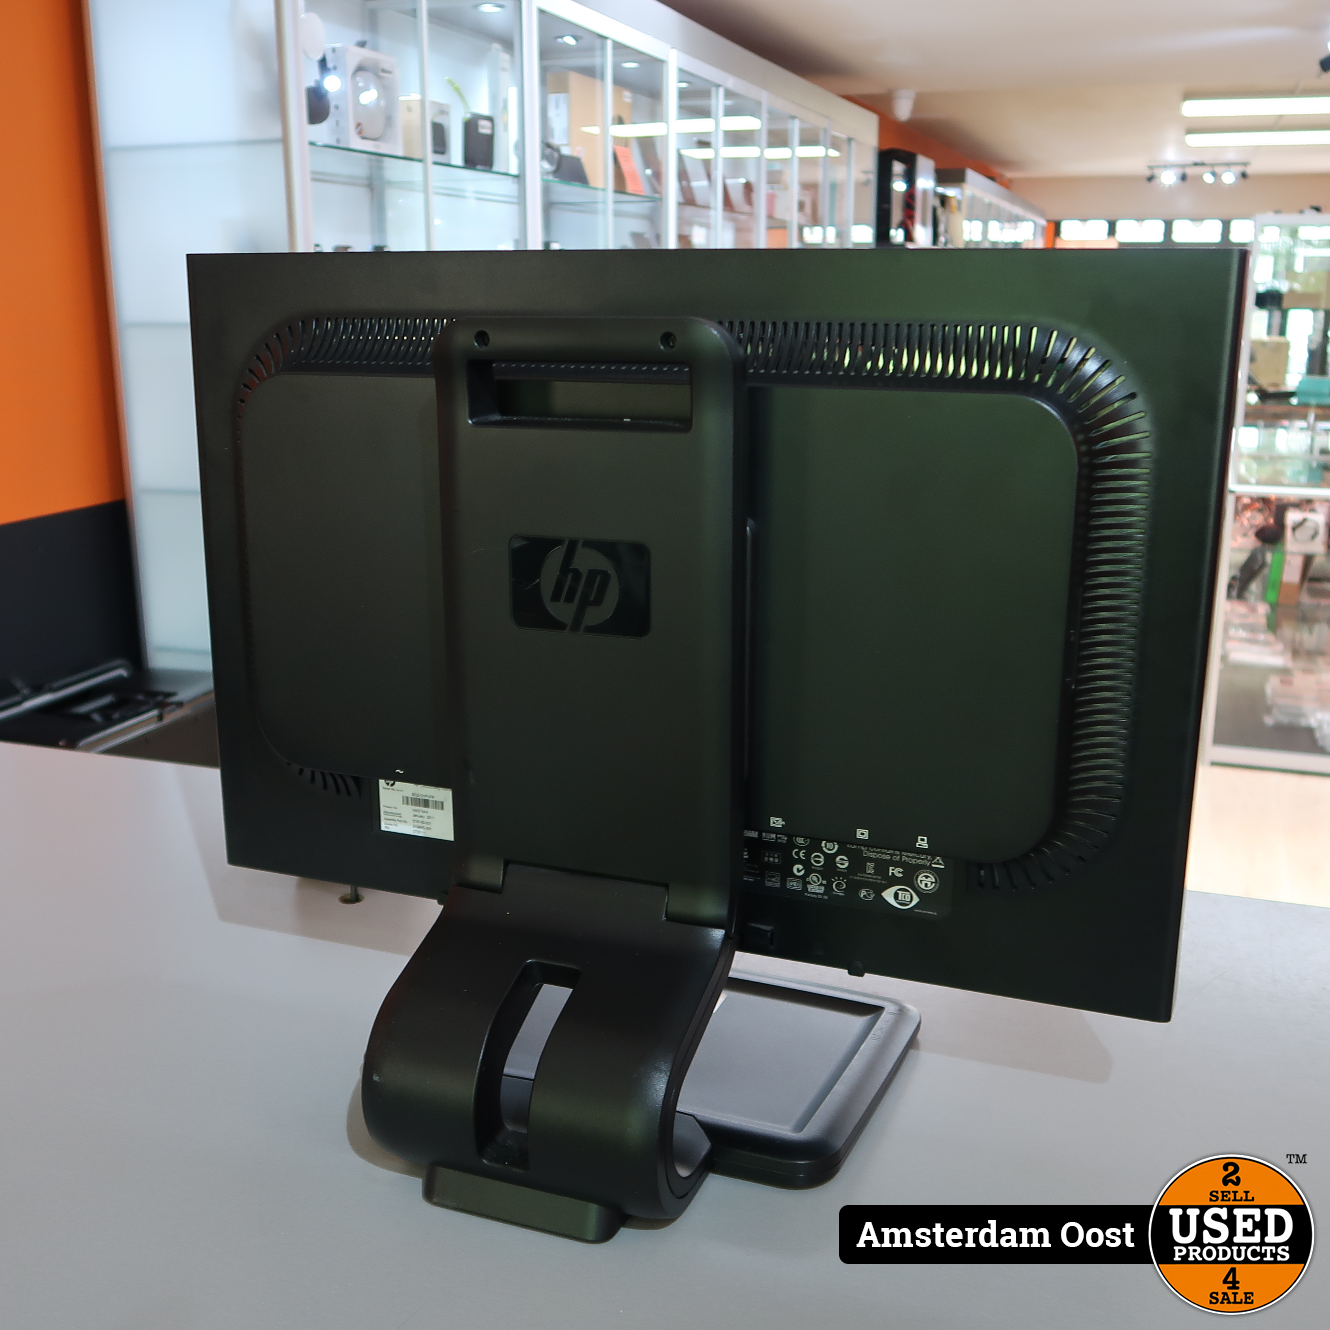 Inzichtelijk Hinder officieel HP Compaq LA2205wg 22-inch Monitor | in Prima Staat - Used Products  Amsterdam Oost